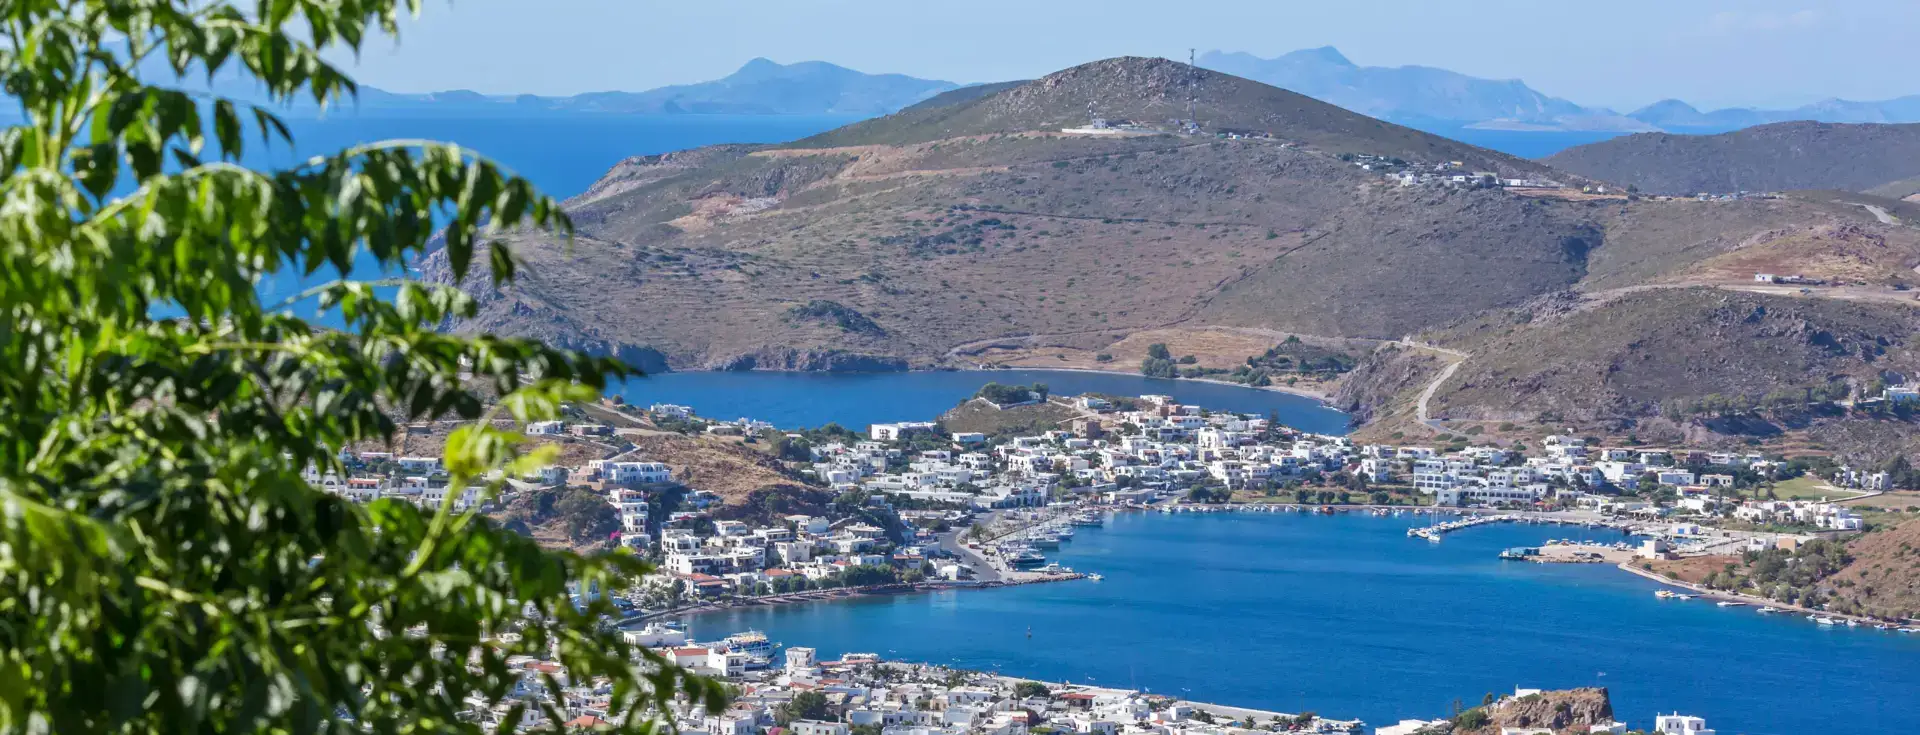 Patmos Adası